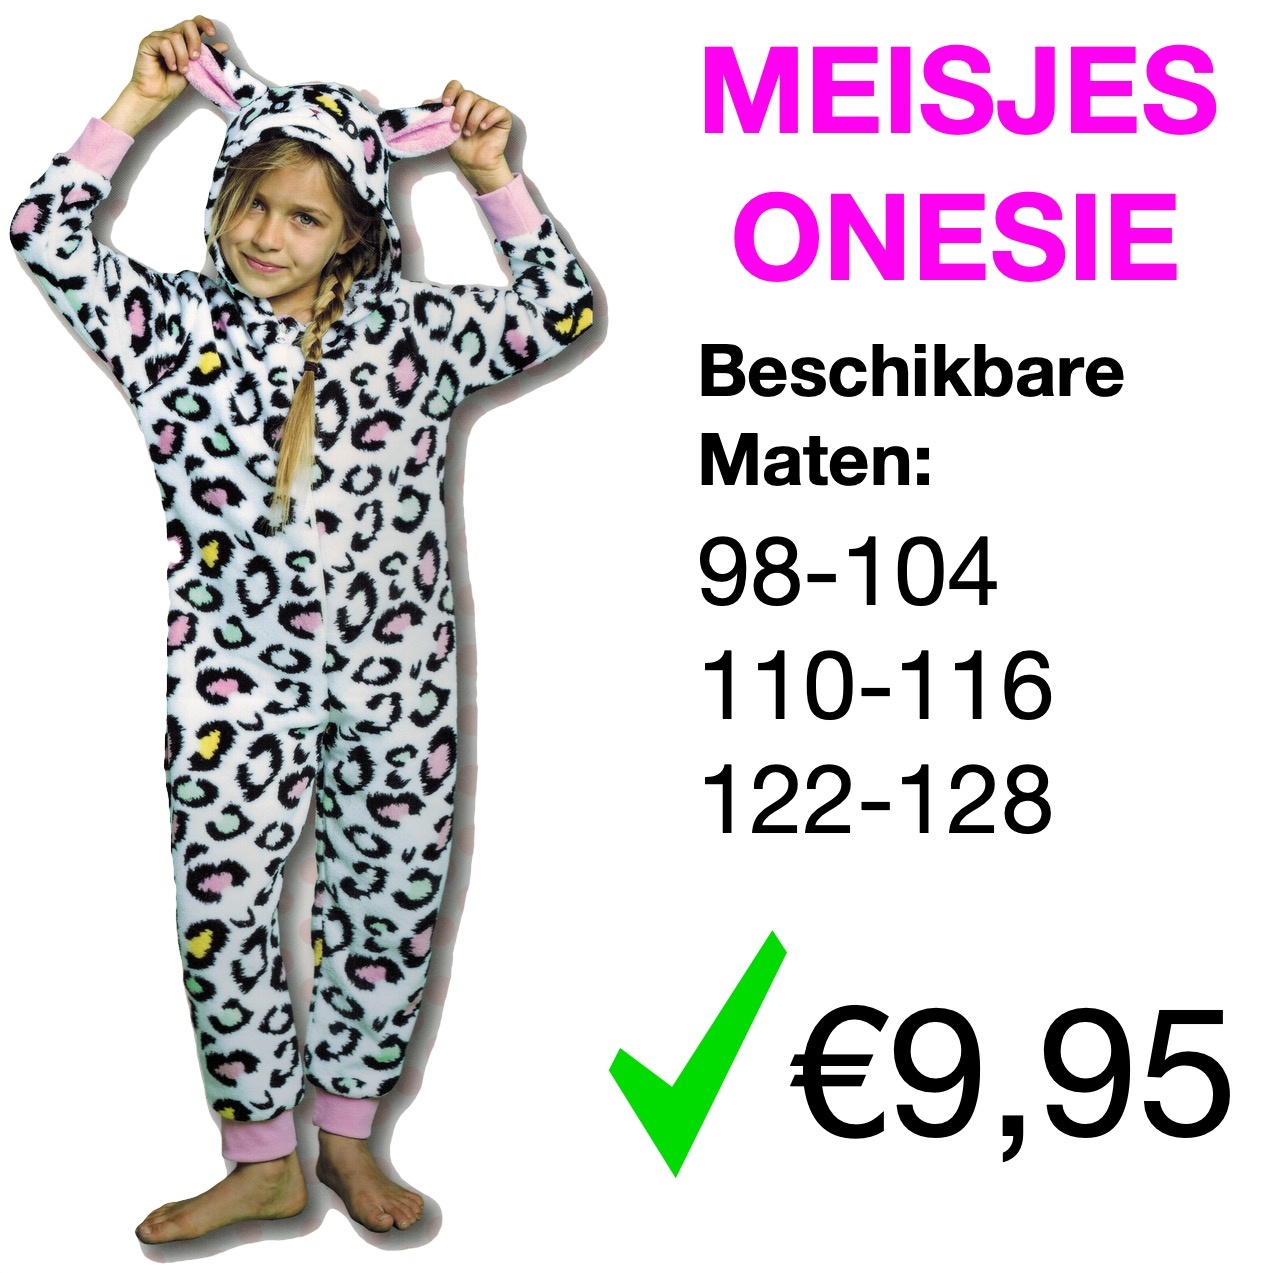 Mysterieus kiezen filter Meisjes Onesie (98 t/m 128) - Tientjeofminder.nl